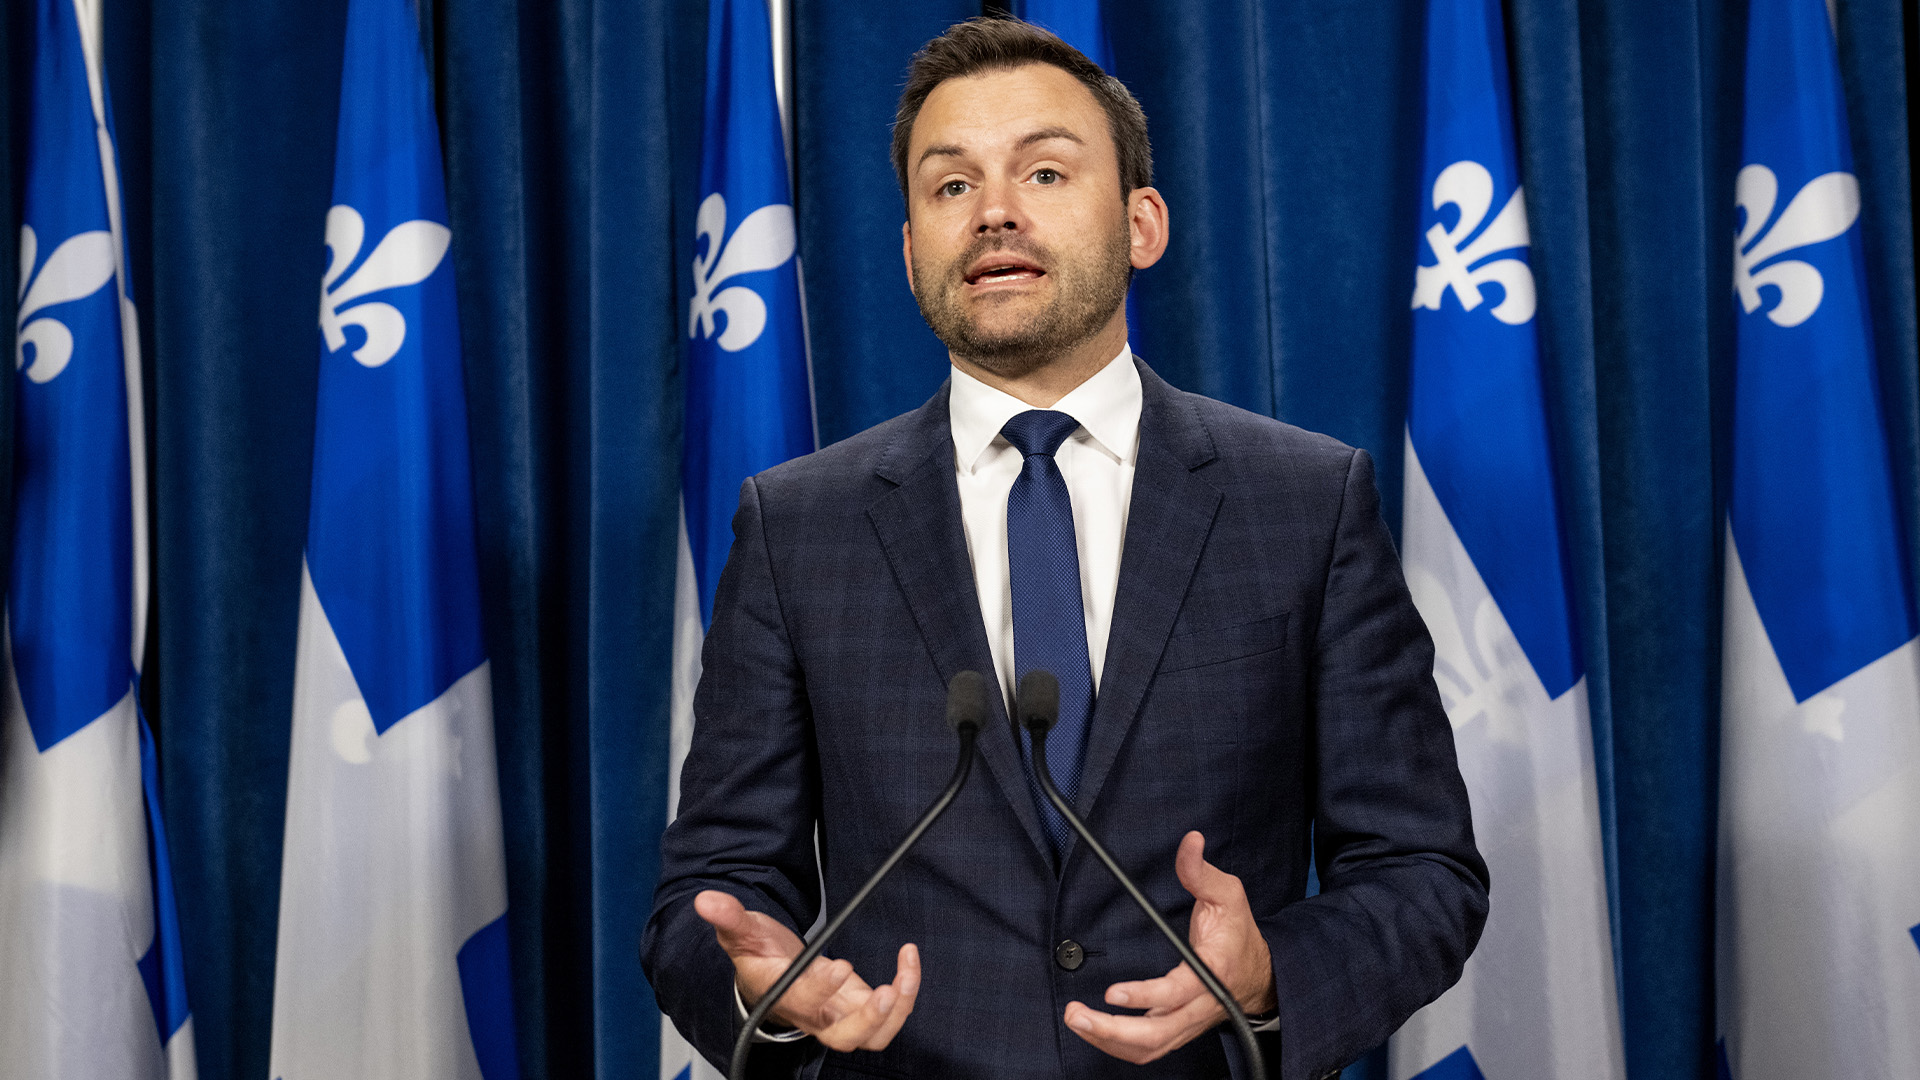 Le chef du Parti québécois Paul St-Pierre Plamondon prend la parole lors d'une conférence de presse, le lundi 17 octobre 2022 à l'Assemblée législative de Québec.